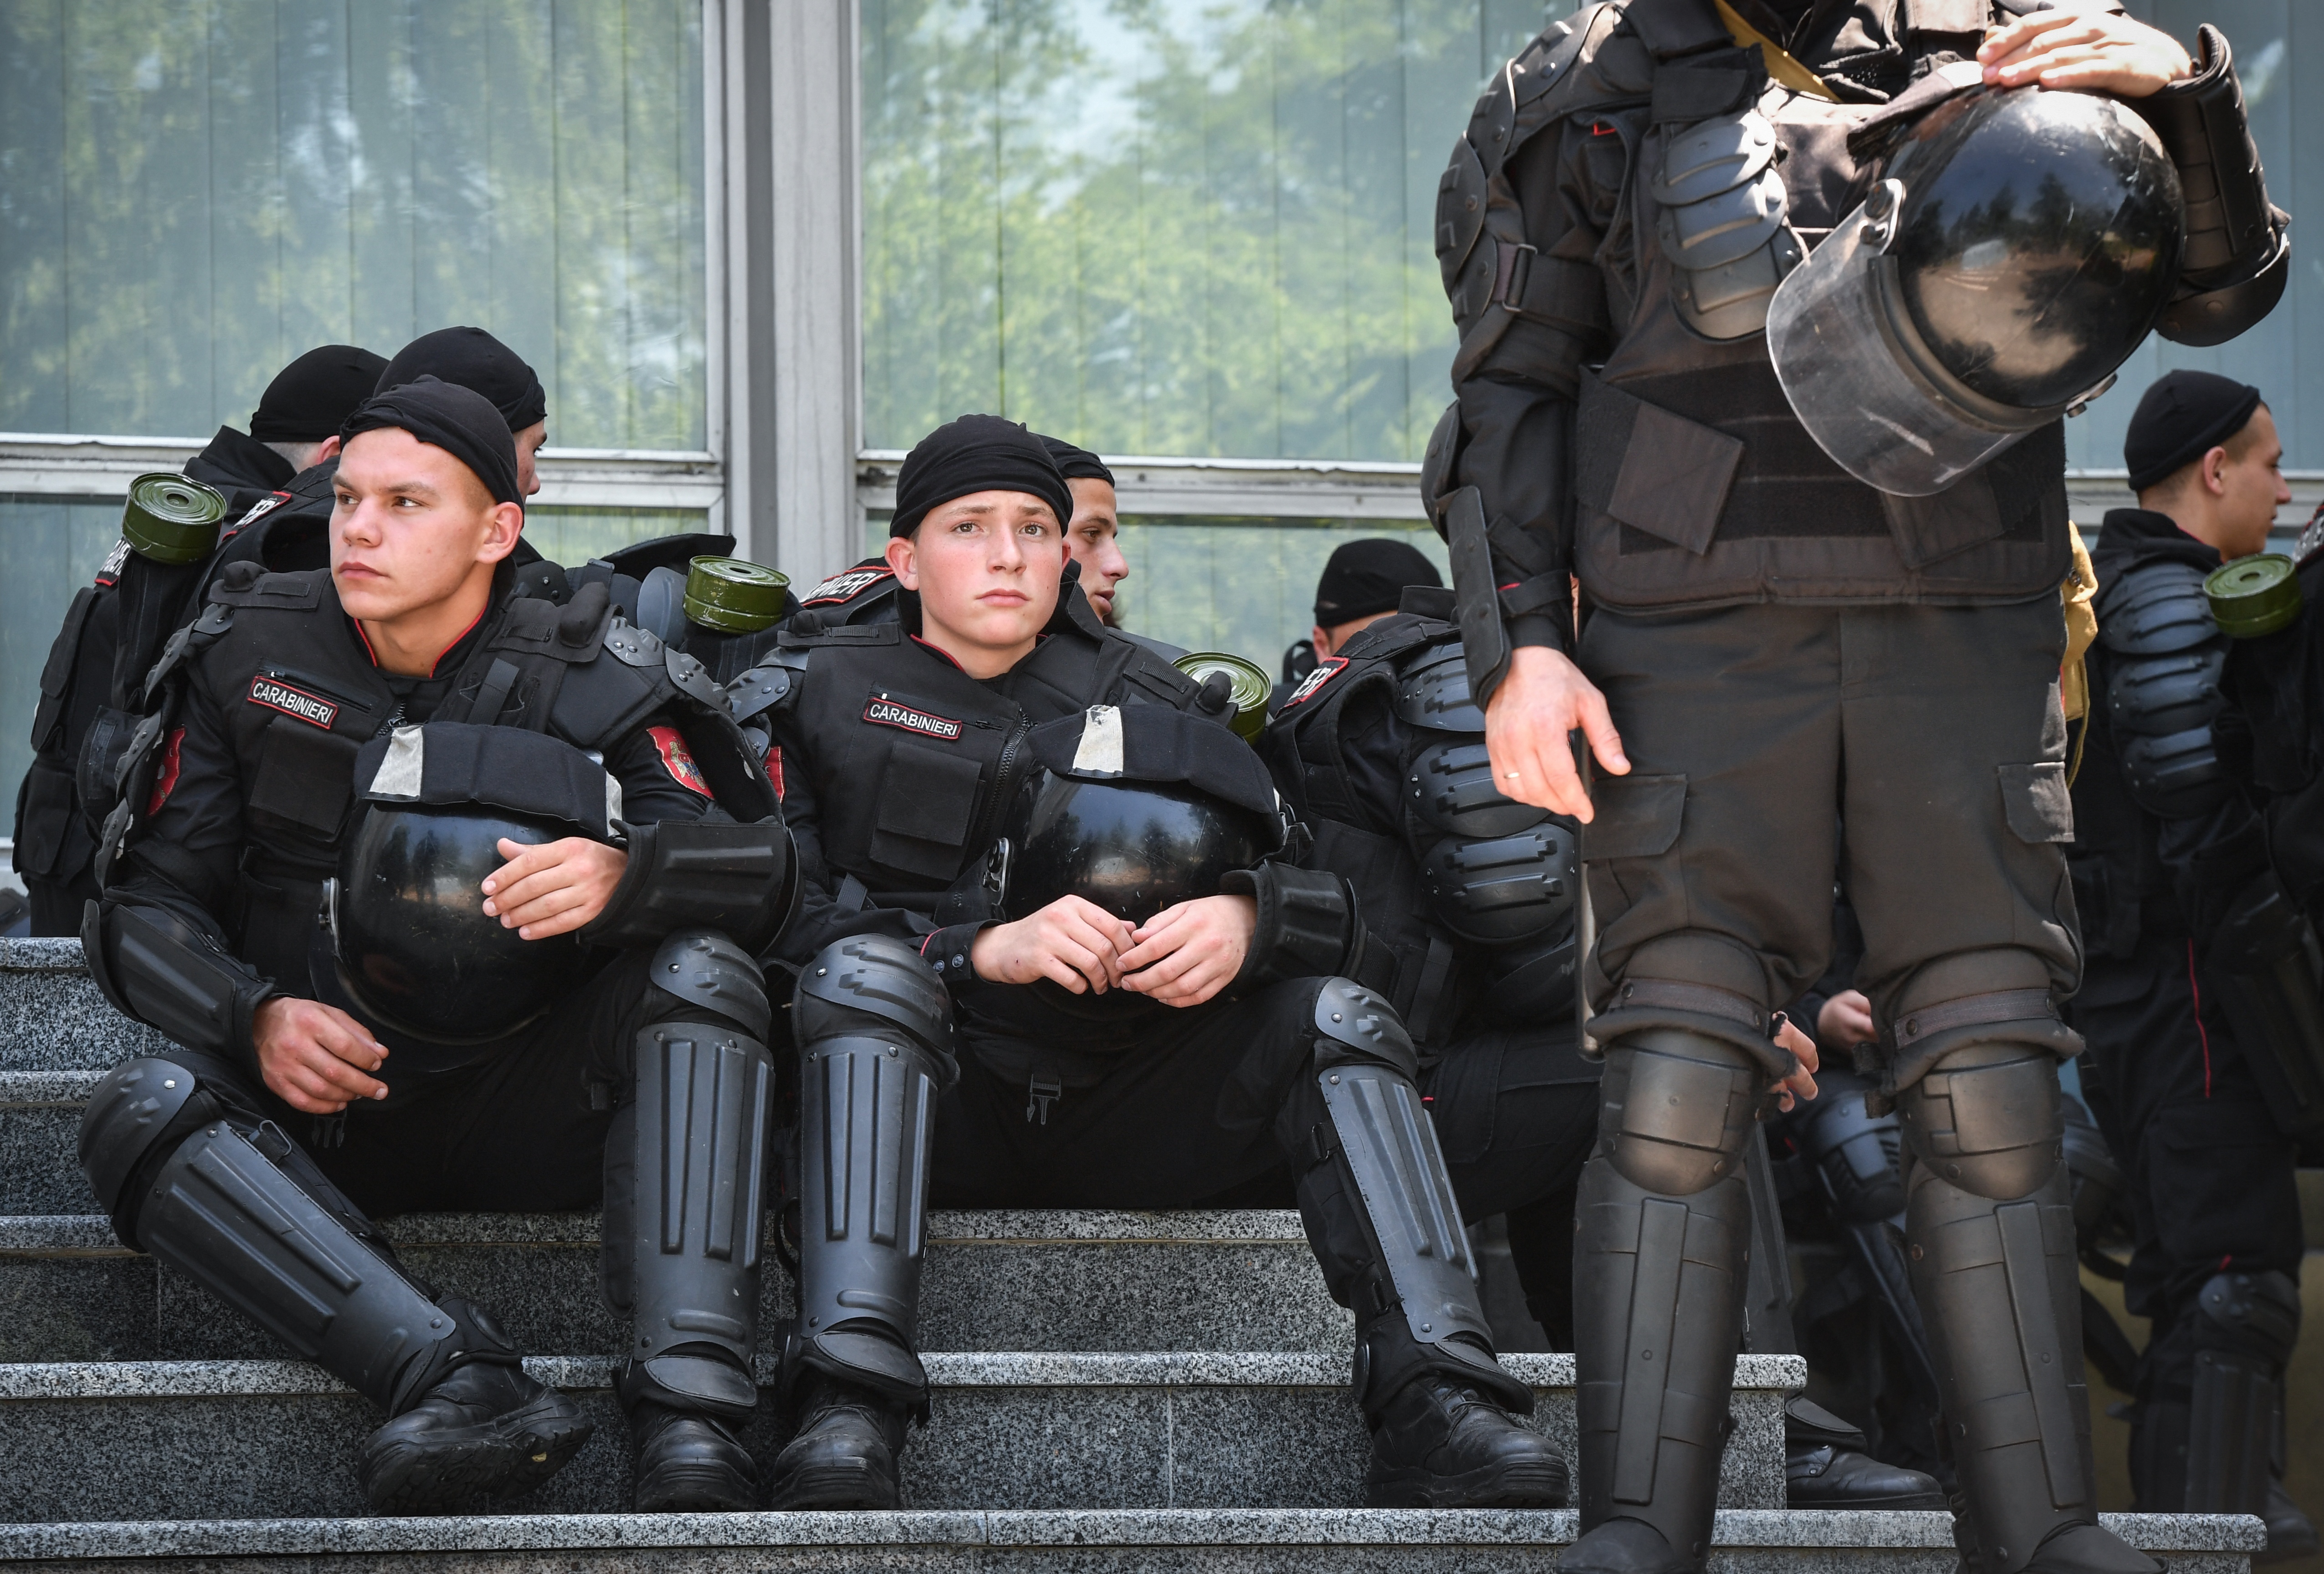 Lemondott a moldáv kormány, közösen veheti át a hatalmat az oroszbarát és az Európa-párti ellenzék